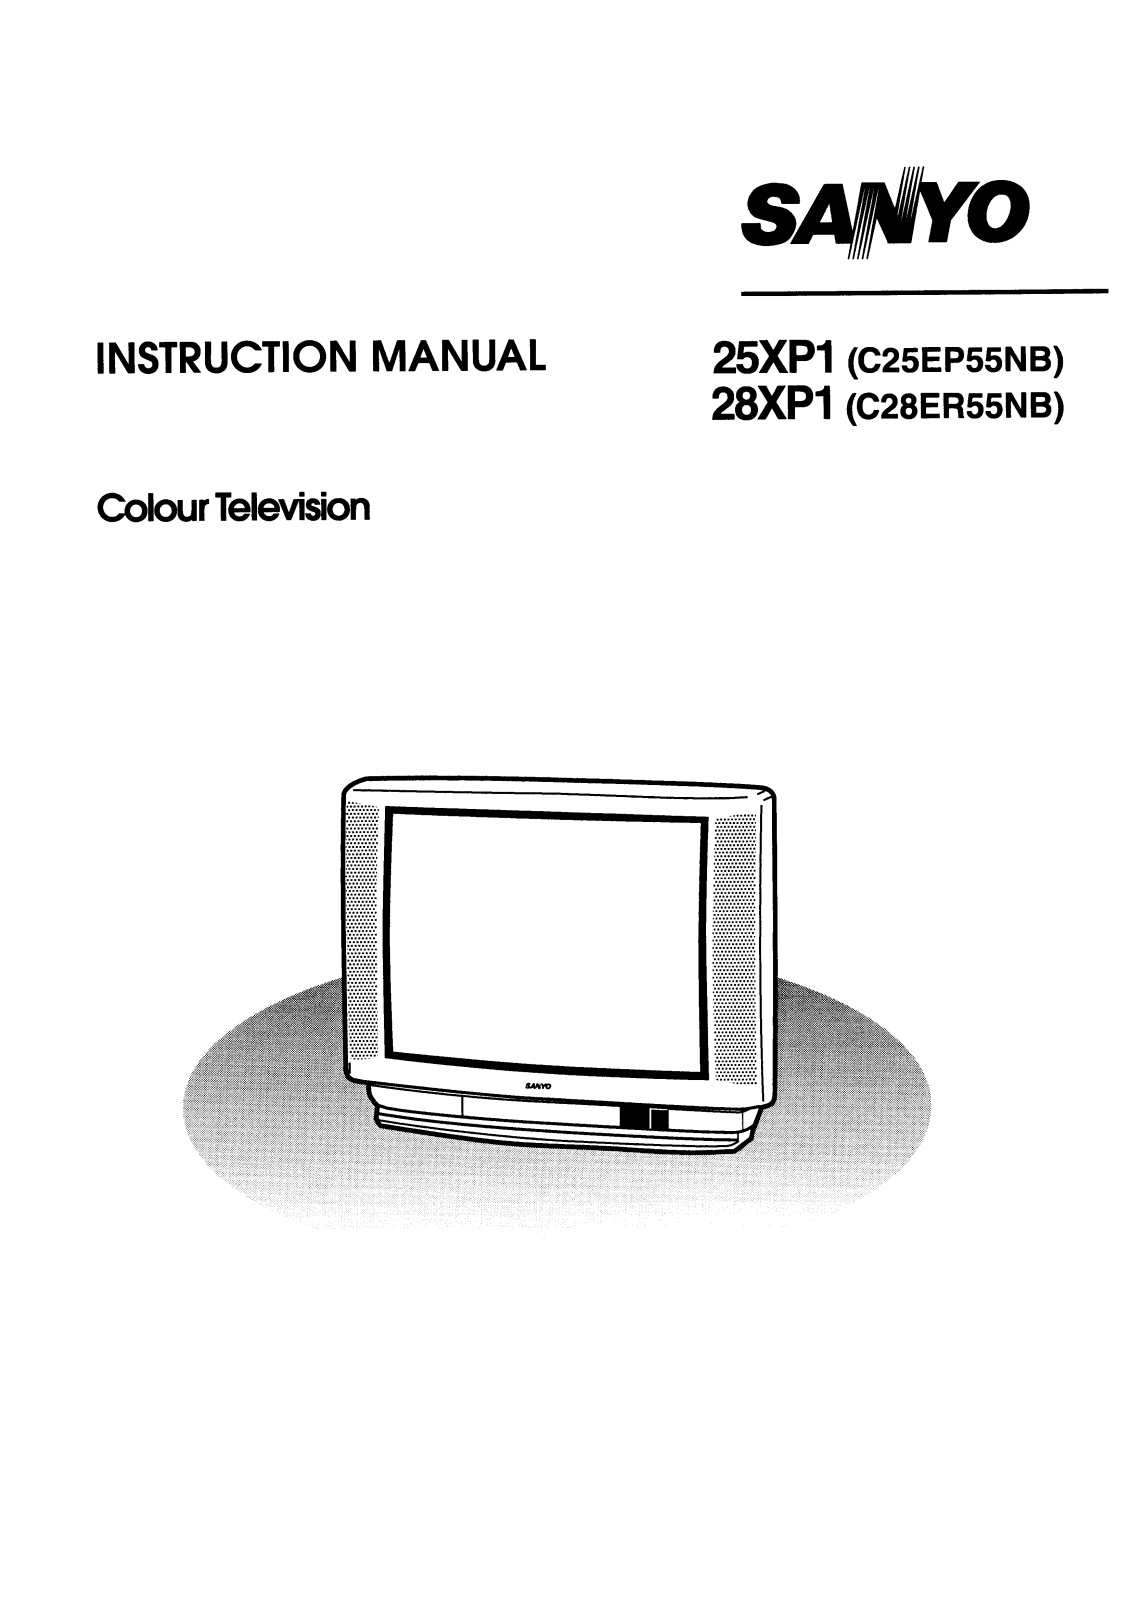 Sanyo C25EP55NB, C28ER55NB Instruction Manual